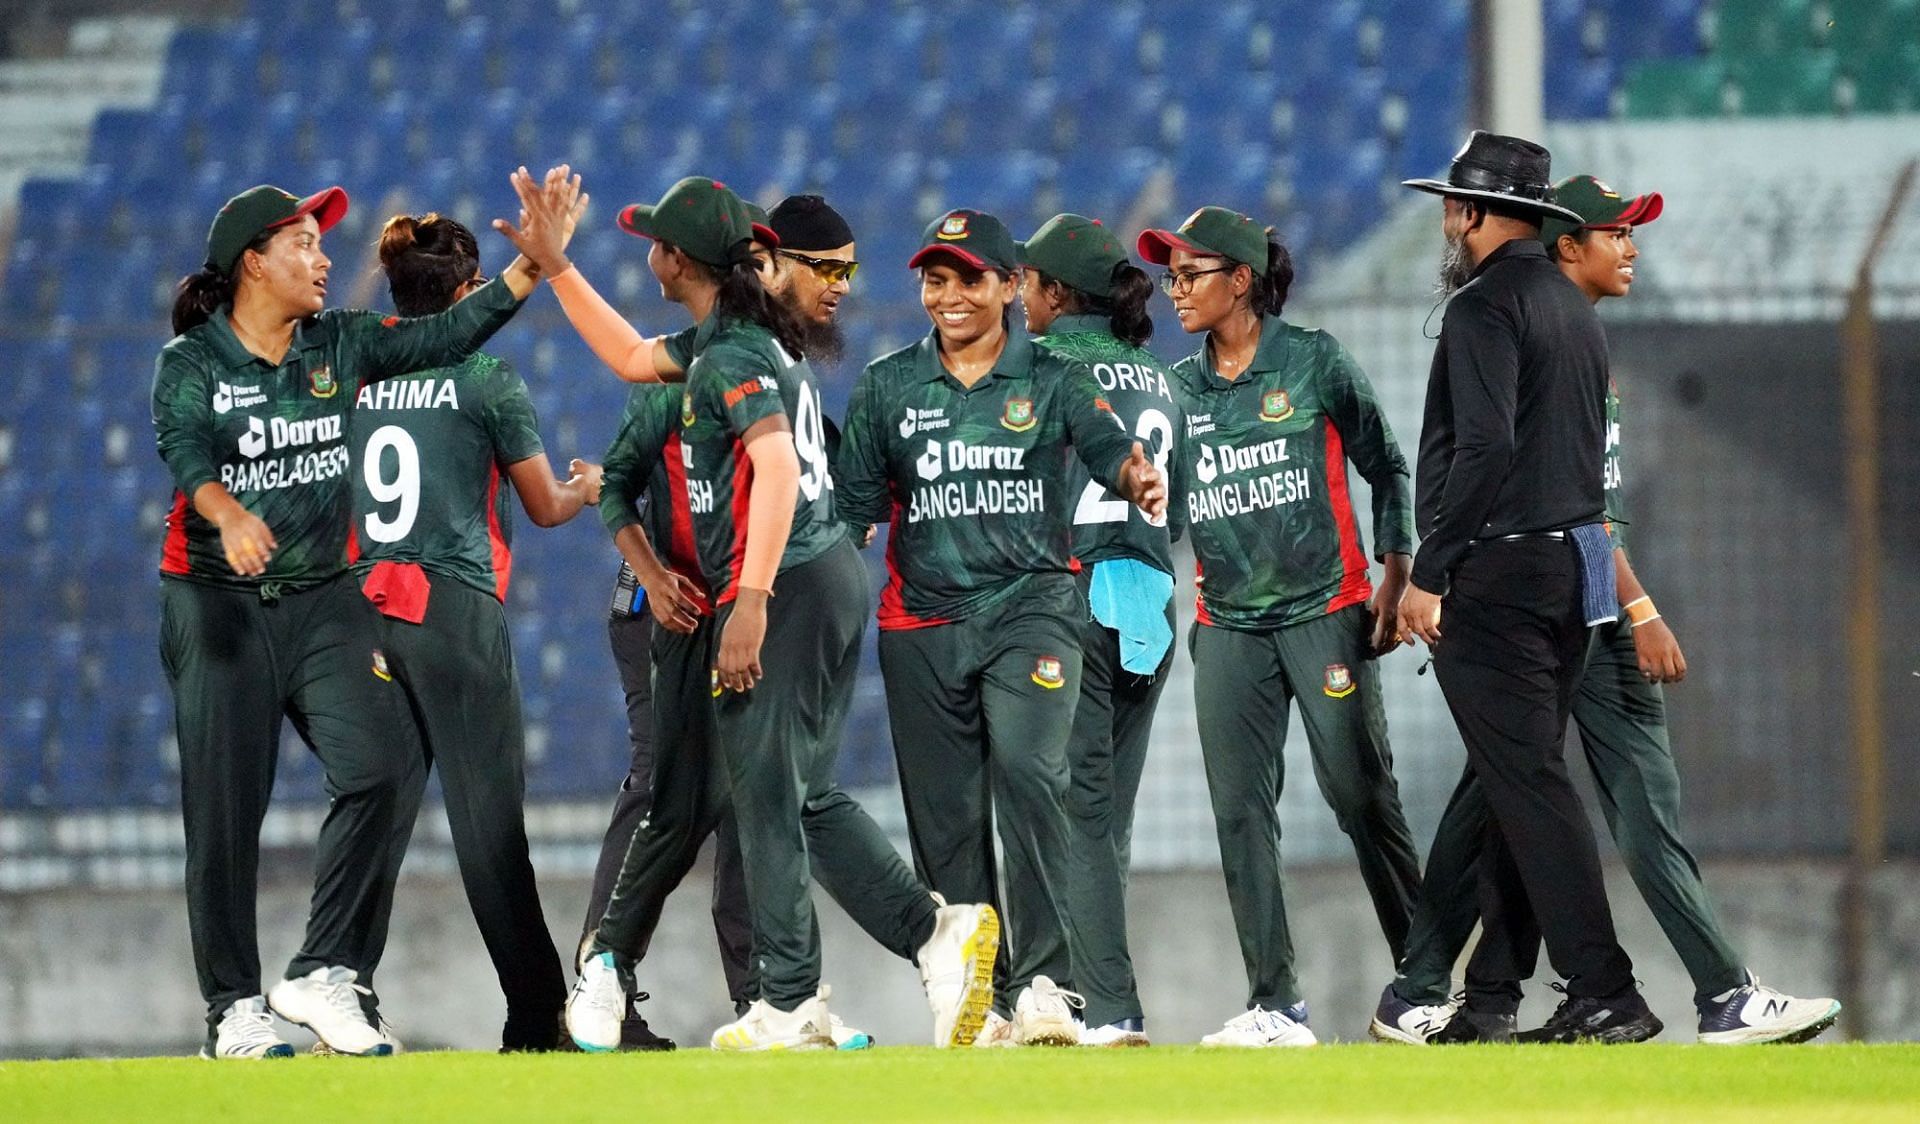 Bangladesh cricket team in action. (Image Credits: Bangladesh Cricket) 